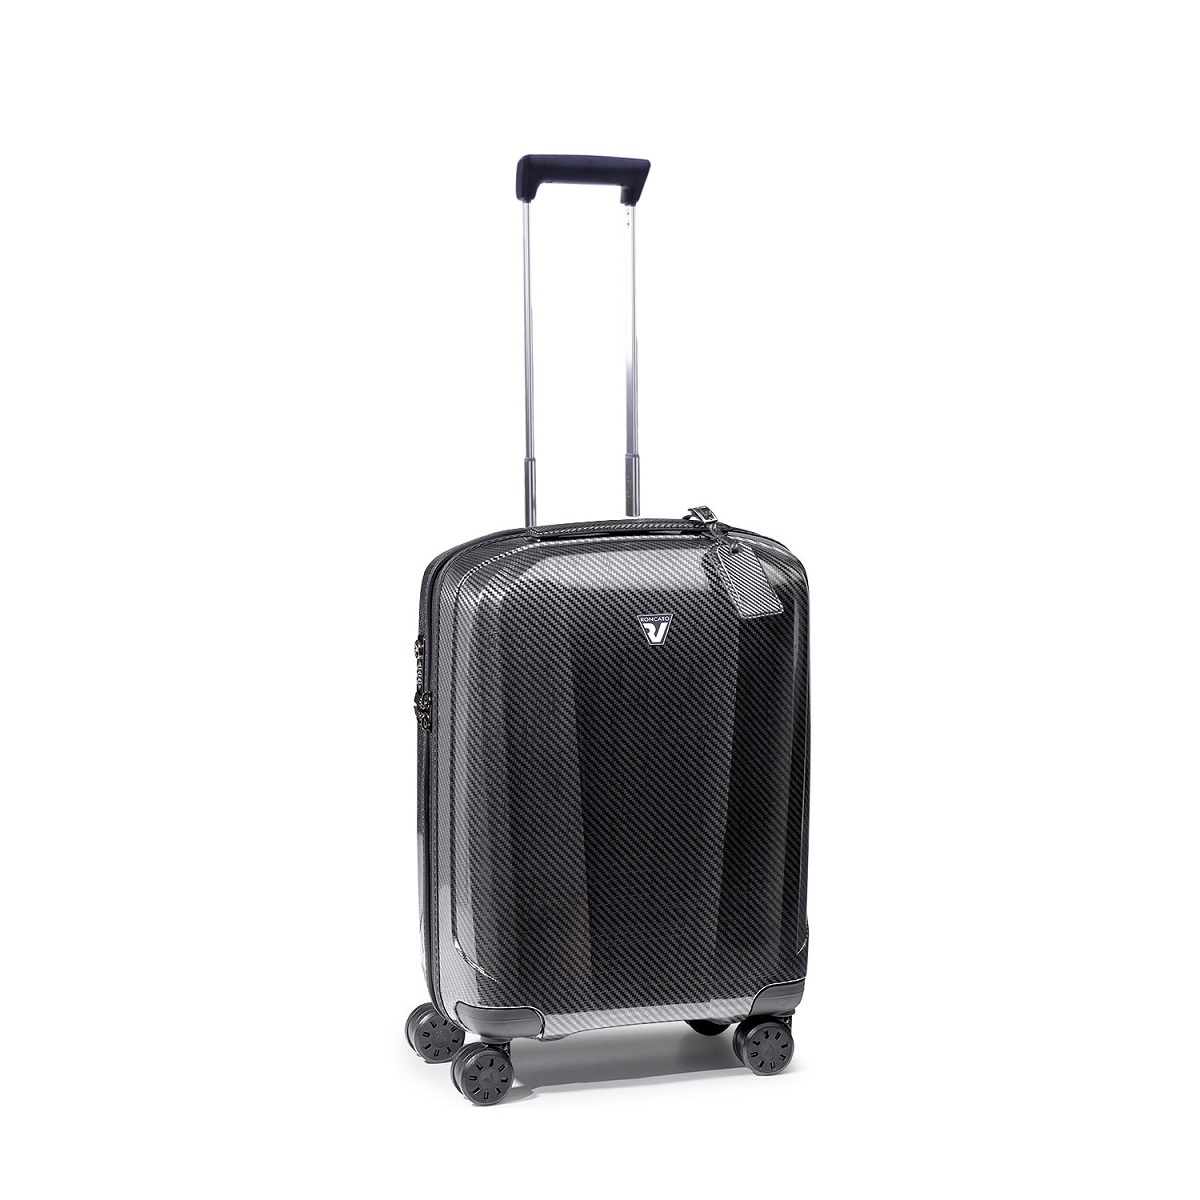 WE-GLAM Handgepäck Koffer in Graphit von Roncato